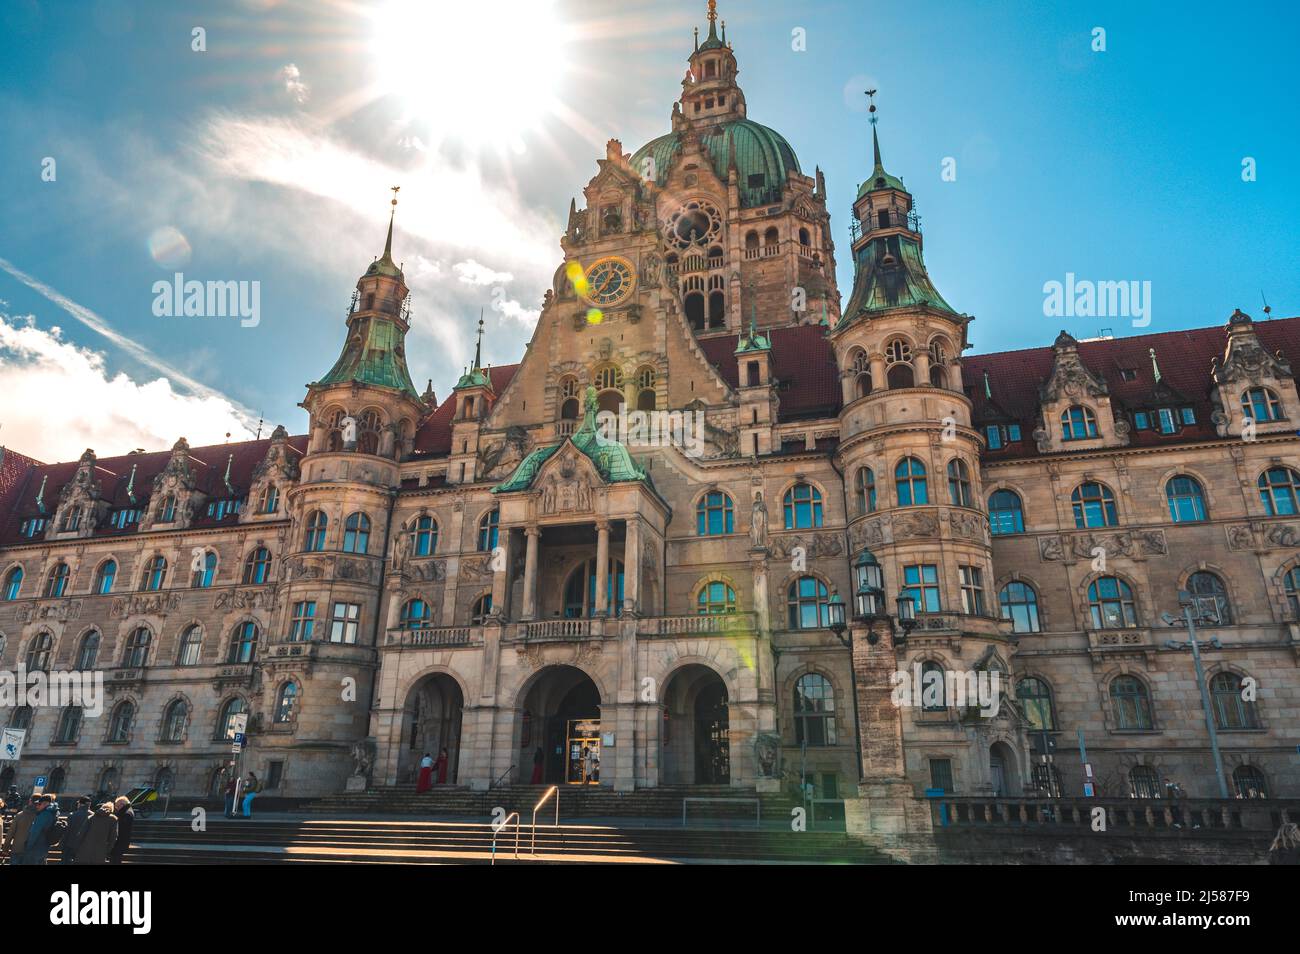 Das neue Rathaus von Hannover bei Sonnenschein und blauen Himmel, Hannover, Niedersachsen Deutschland Stock Photo